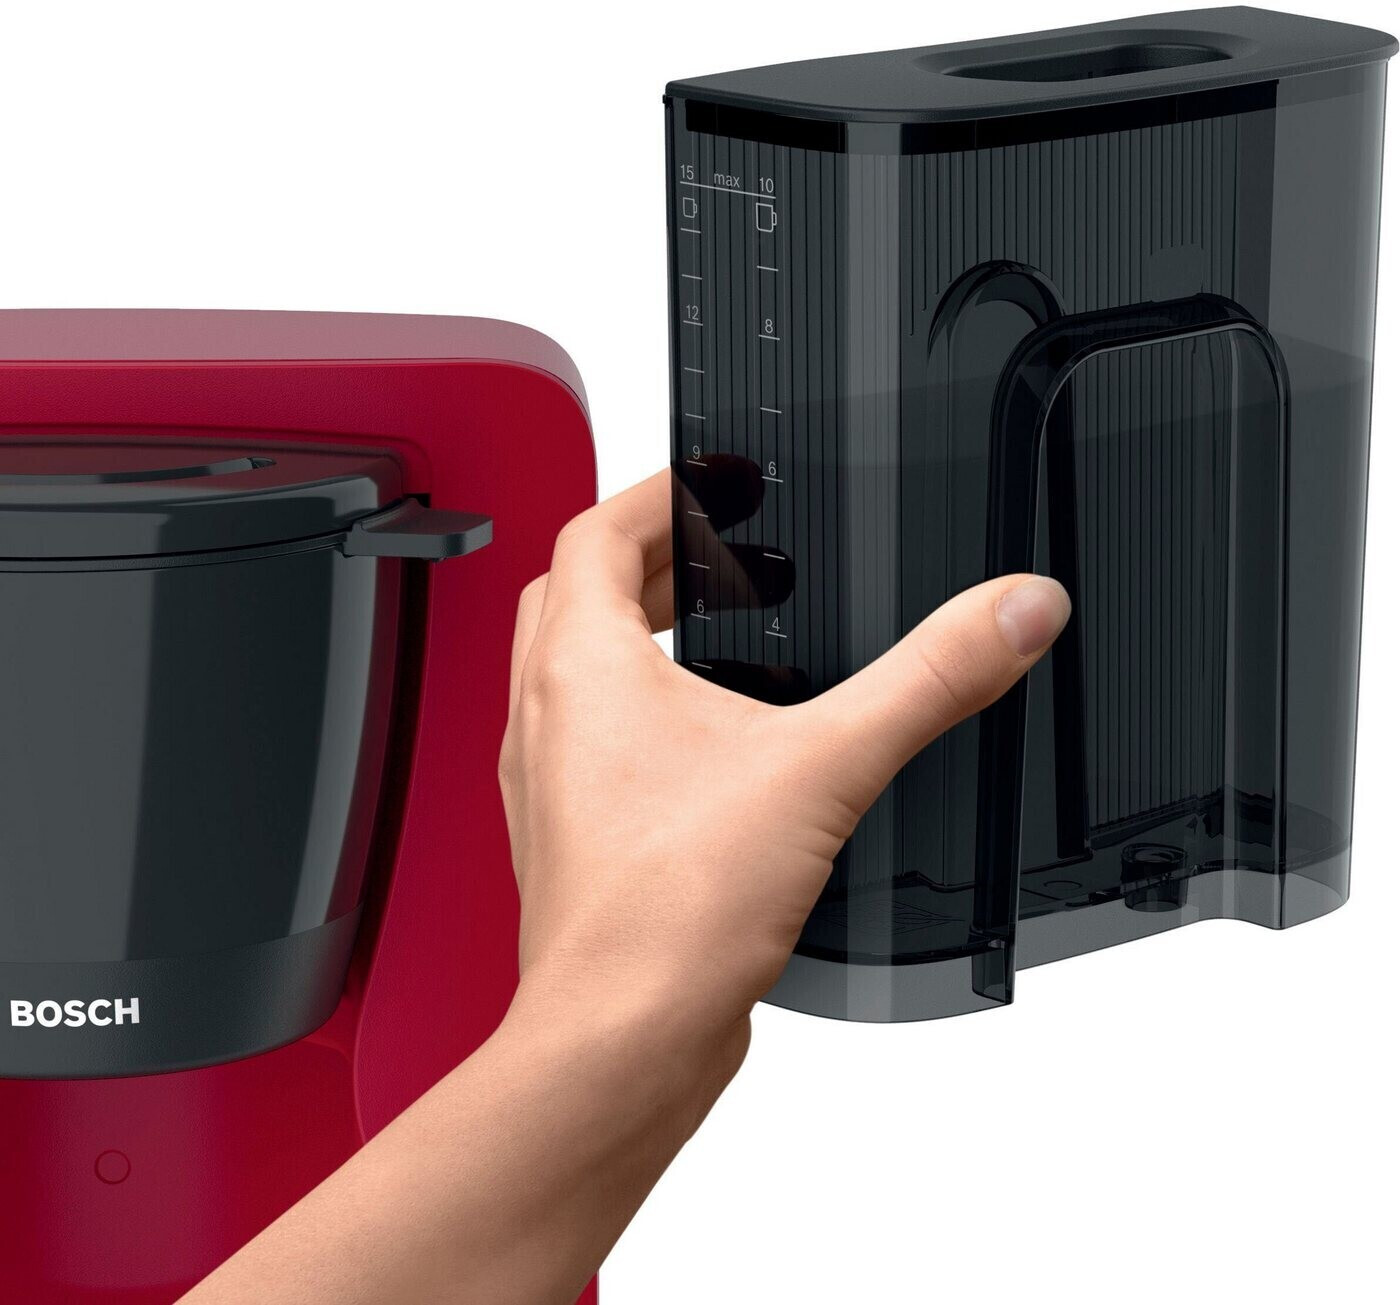 ab TKA3M133 36,49 bei Glaskanne Preisvergleich Bosch € | MyMoment rot Kaffeemaschine mit